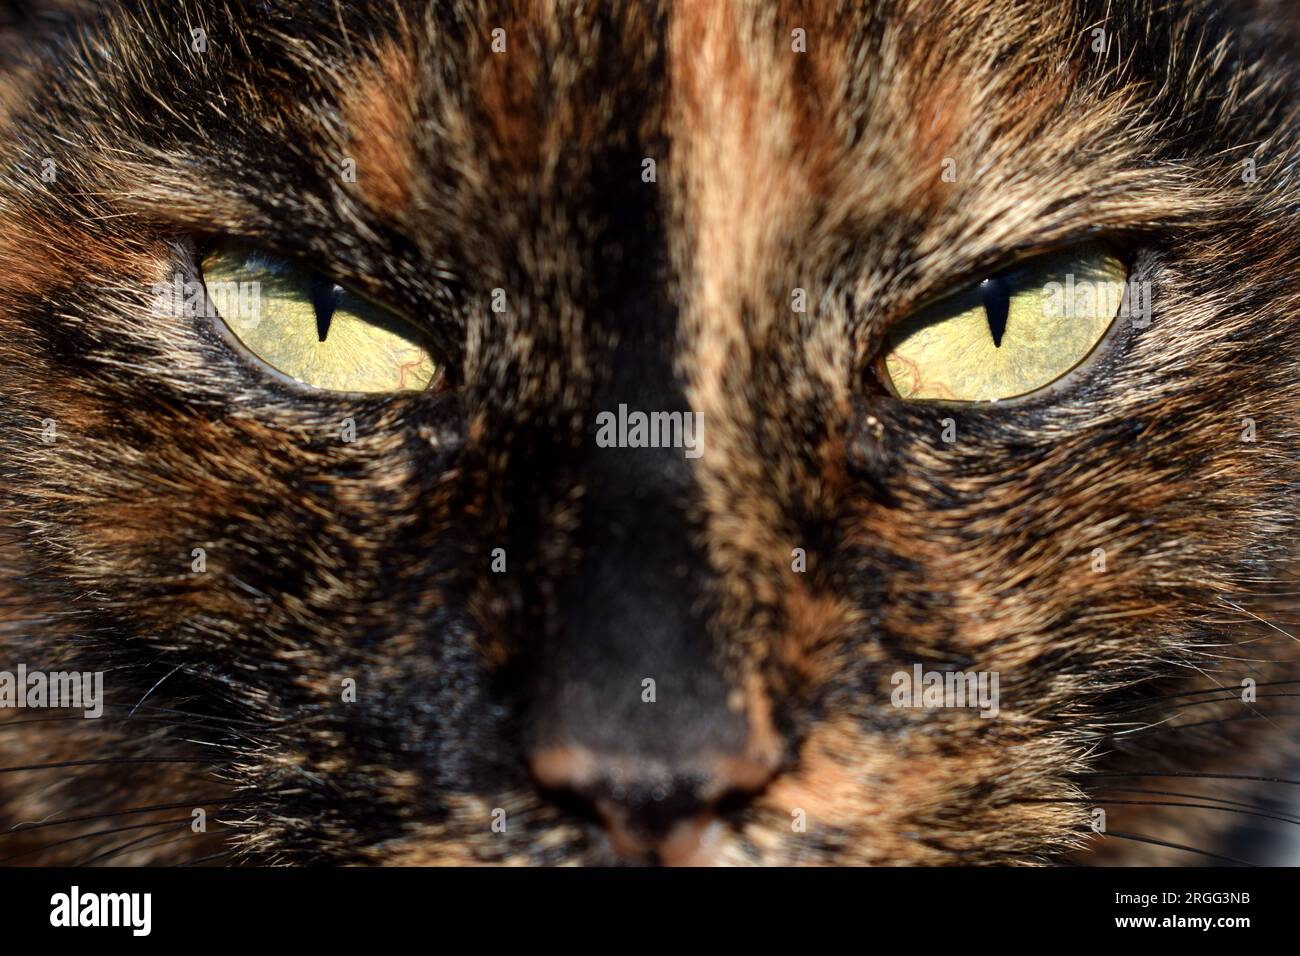 Nahaufnahme eines heimischen schwarzen und braunen Katzengesichts mit ernsthaft aussehenden hellgrünen Augen Stockfoto